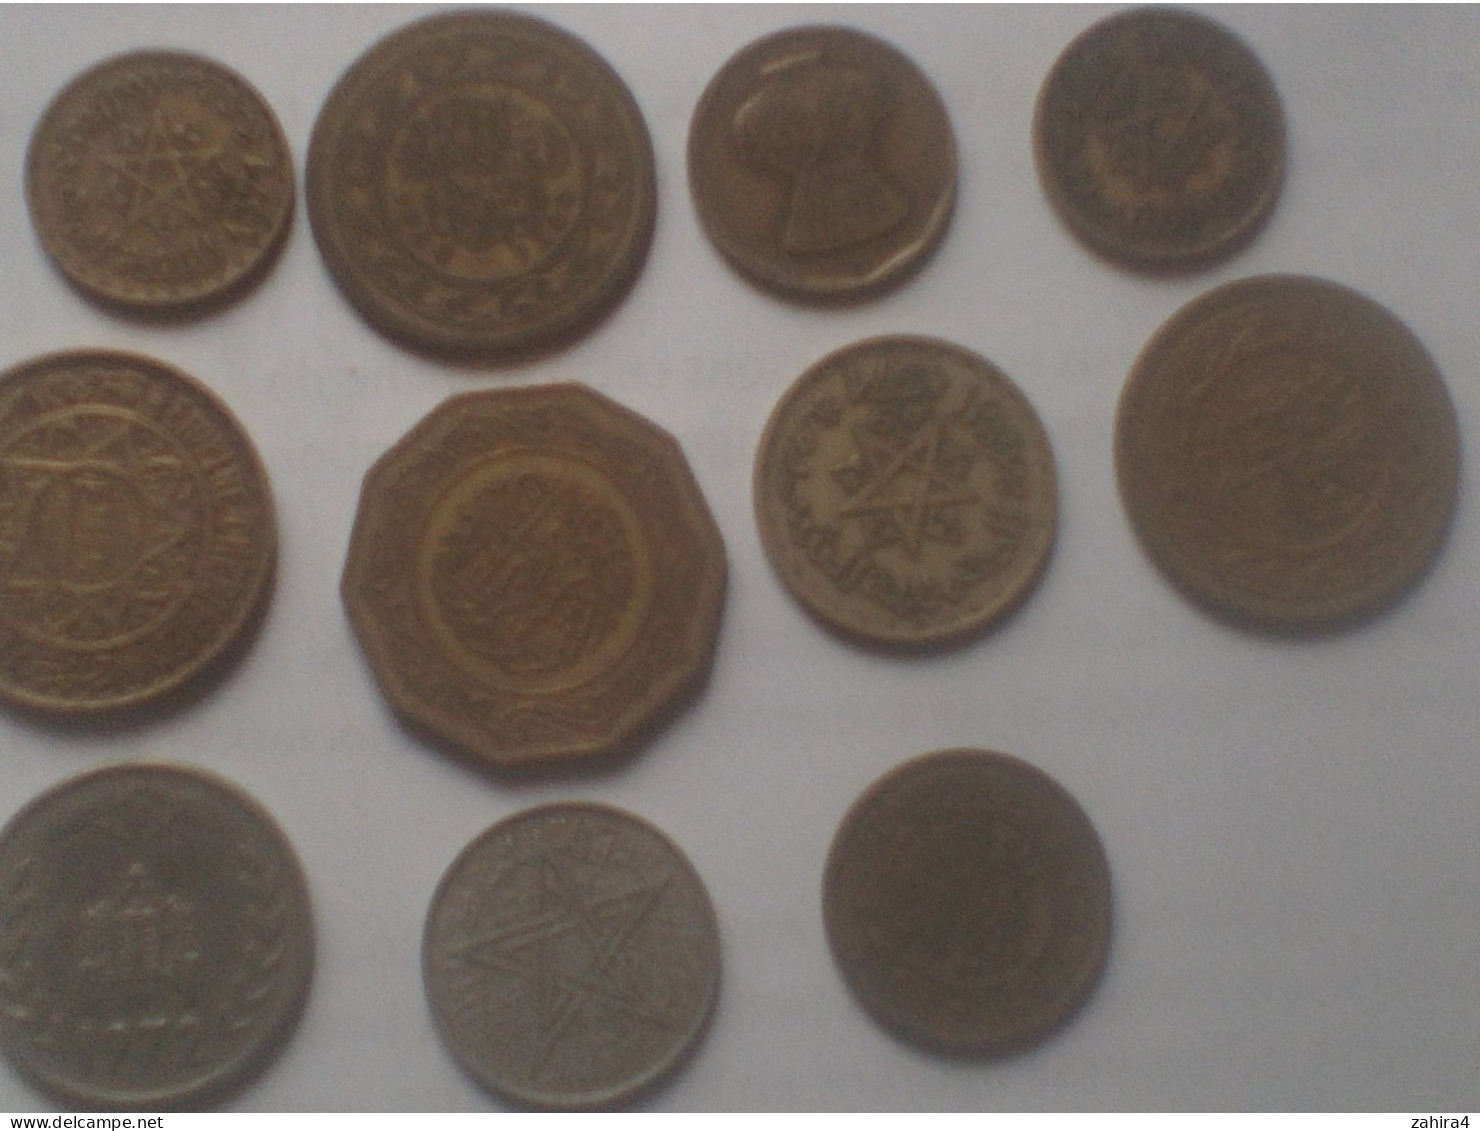 Matroc Et ? - Nord Afrique - 2, 10, 20, 50 Francs 1951 1371 - 1, 10, 20 & 100  1972 79  1960 - Et Une ? Voir Scannes - Lots & Kiloware - Coins